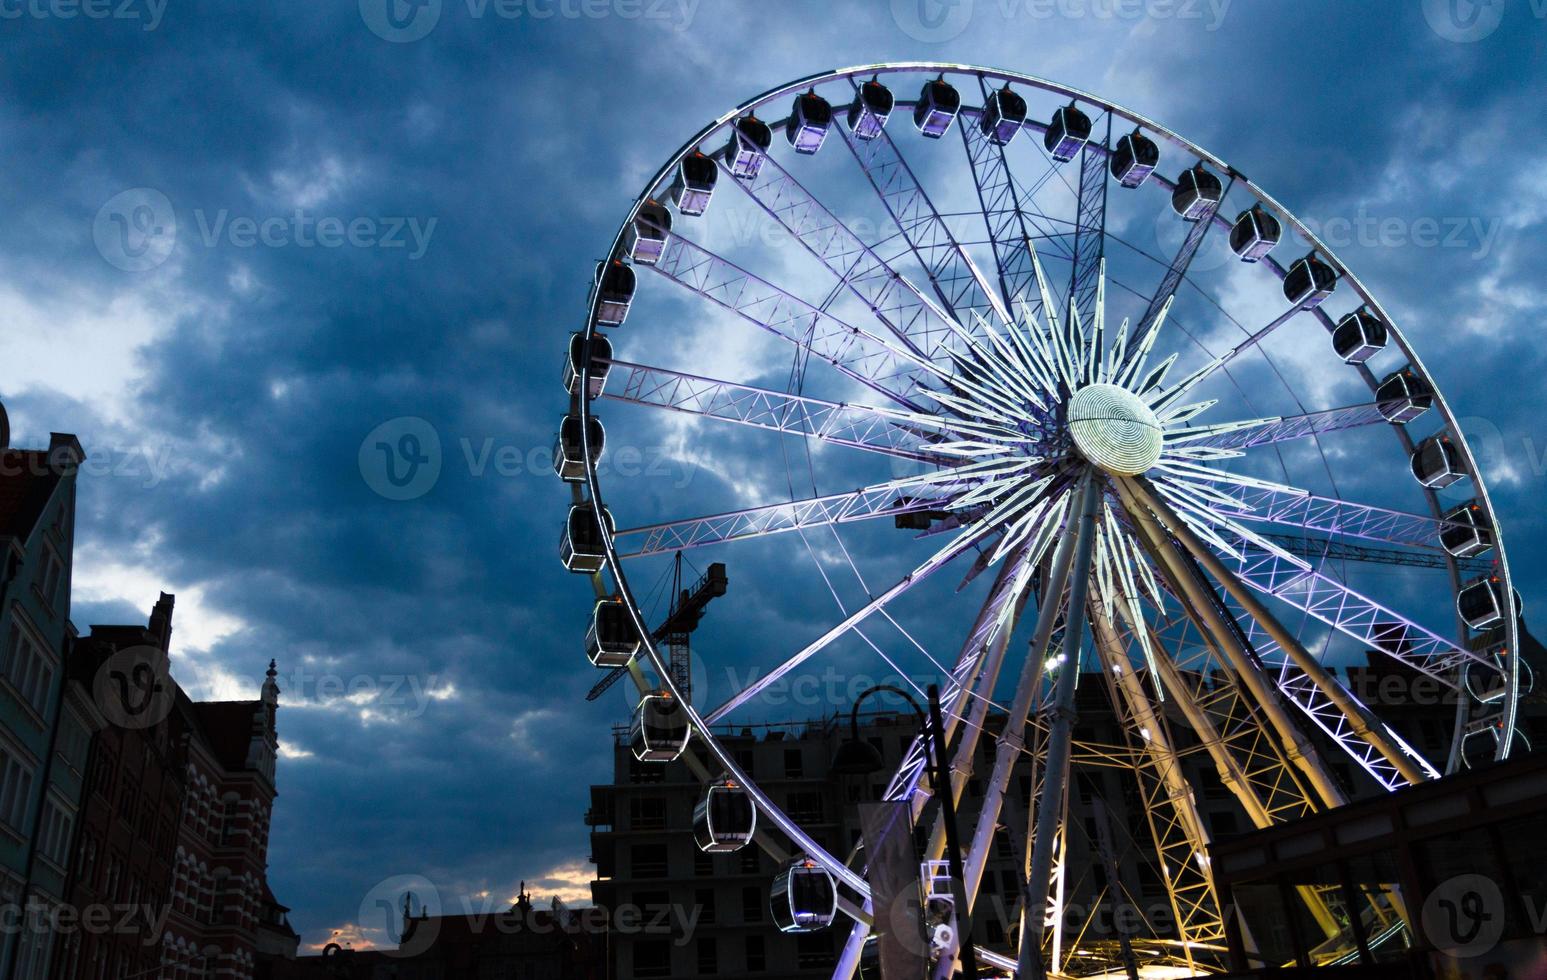 groot lichtgevend reuzenrad voor donkerblauwe dramatische hemel foto